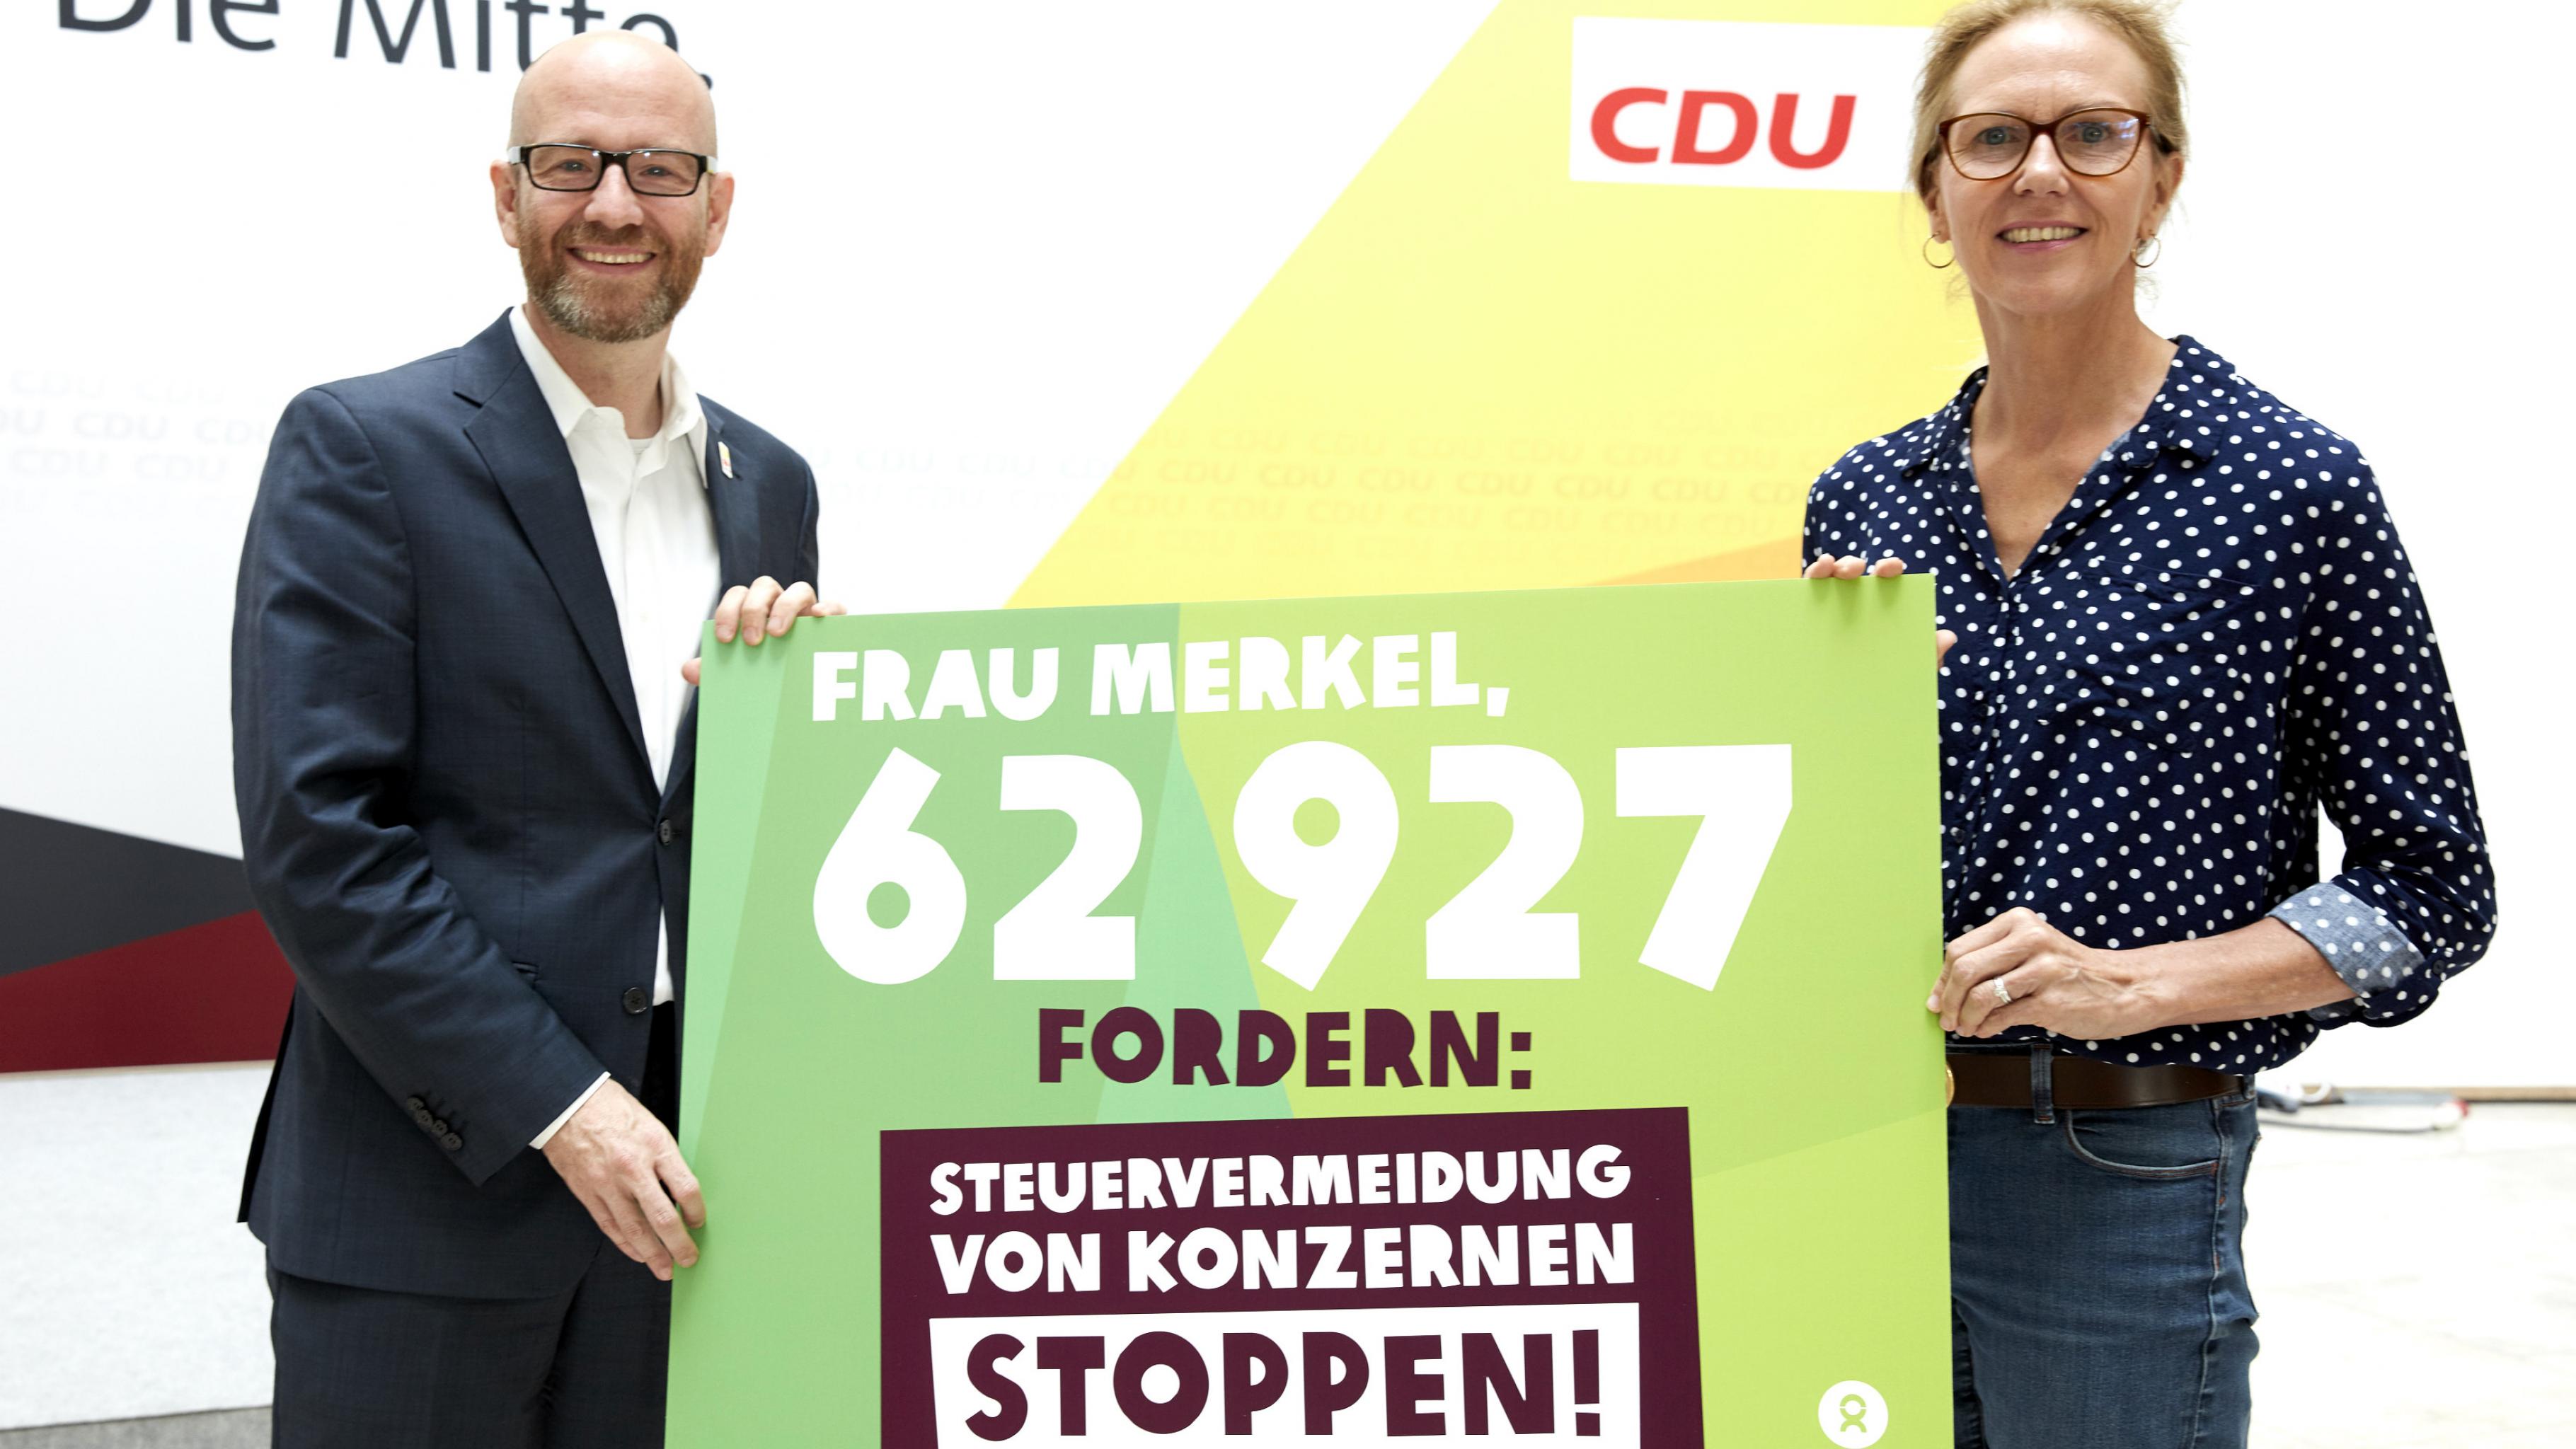 Marion Lieser und Peter Tauber halten ein Plakat mit der Aufschrift: „Frau Merkel, 62927 fordern: Steuervermeidung von Konzernen stoppen!“